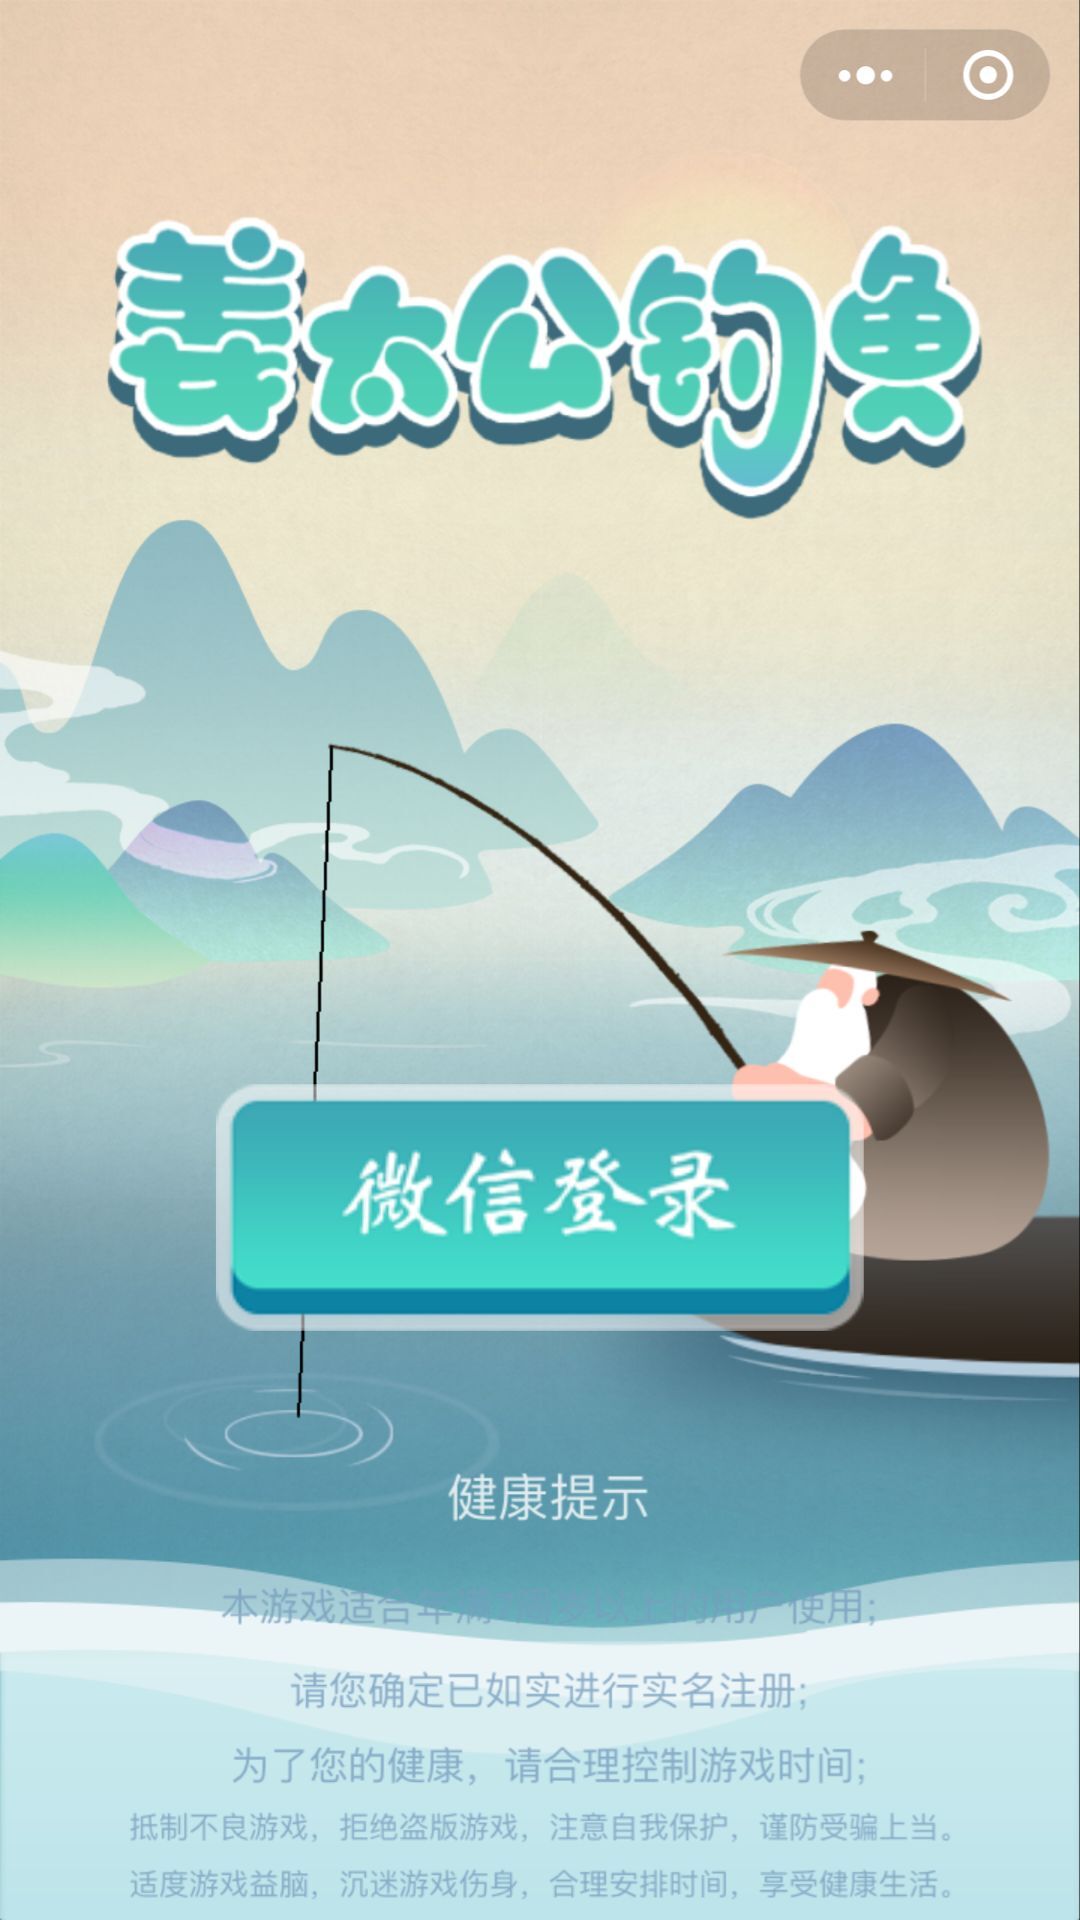 姜太公钓鱼游戏软件_姜太公钓鱼游戏软件小程序_姜太公钓鱼游戏软件微信小程序